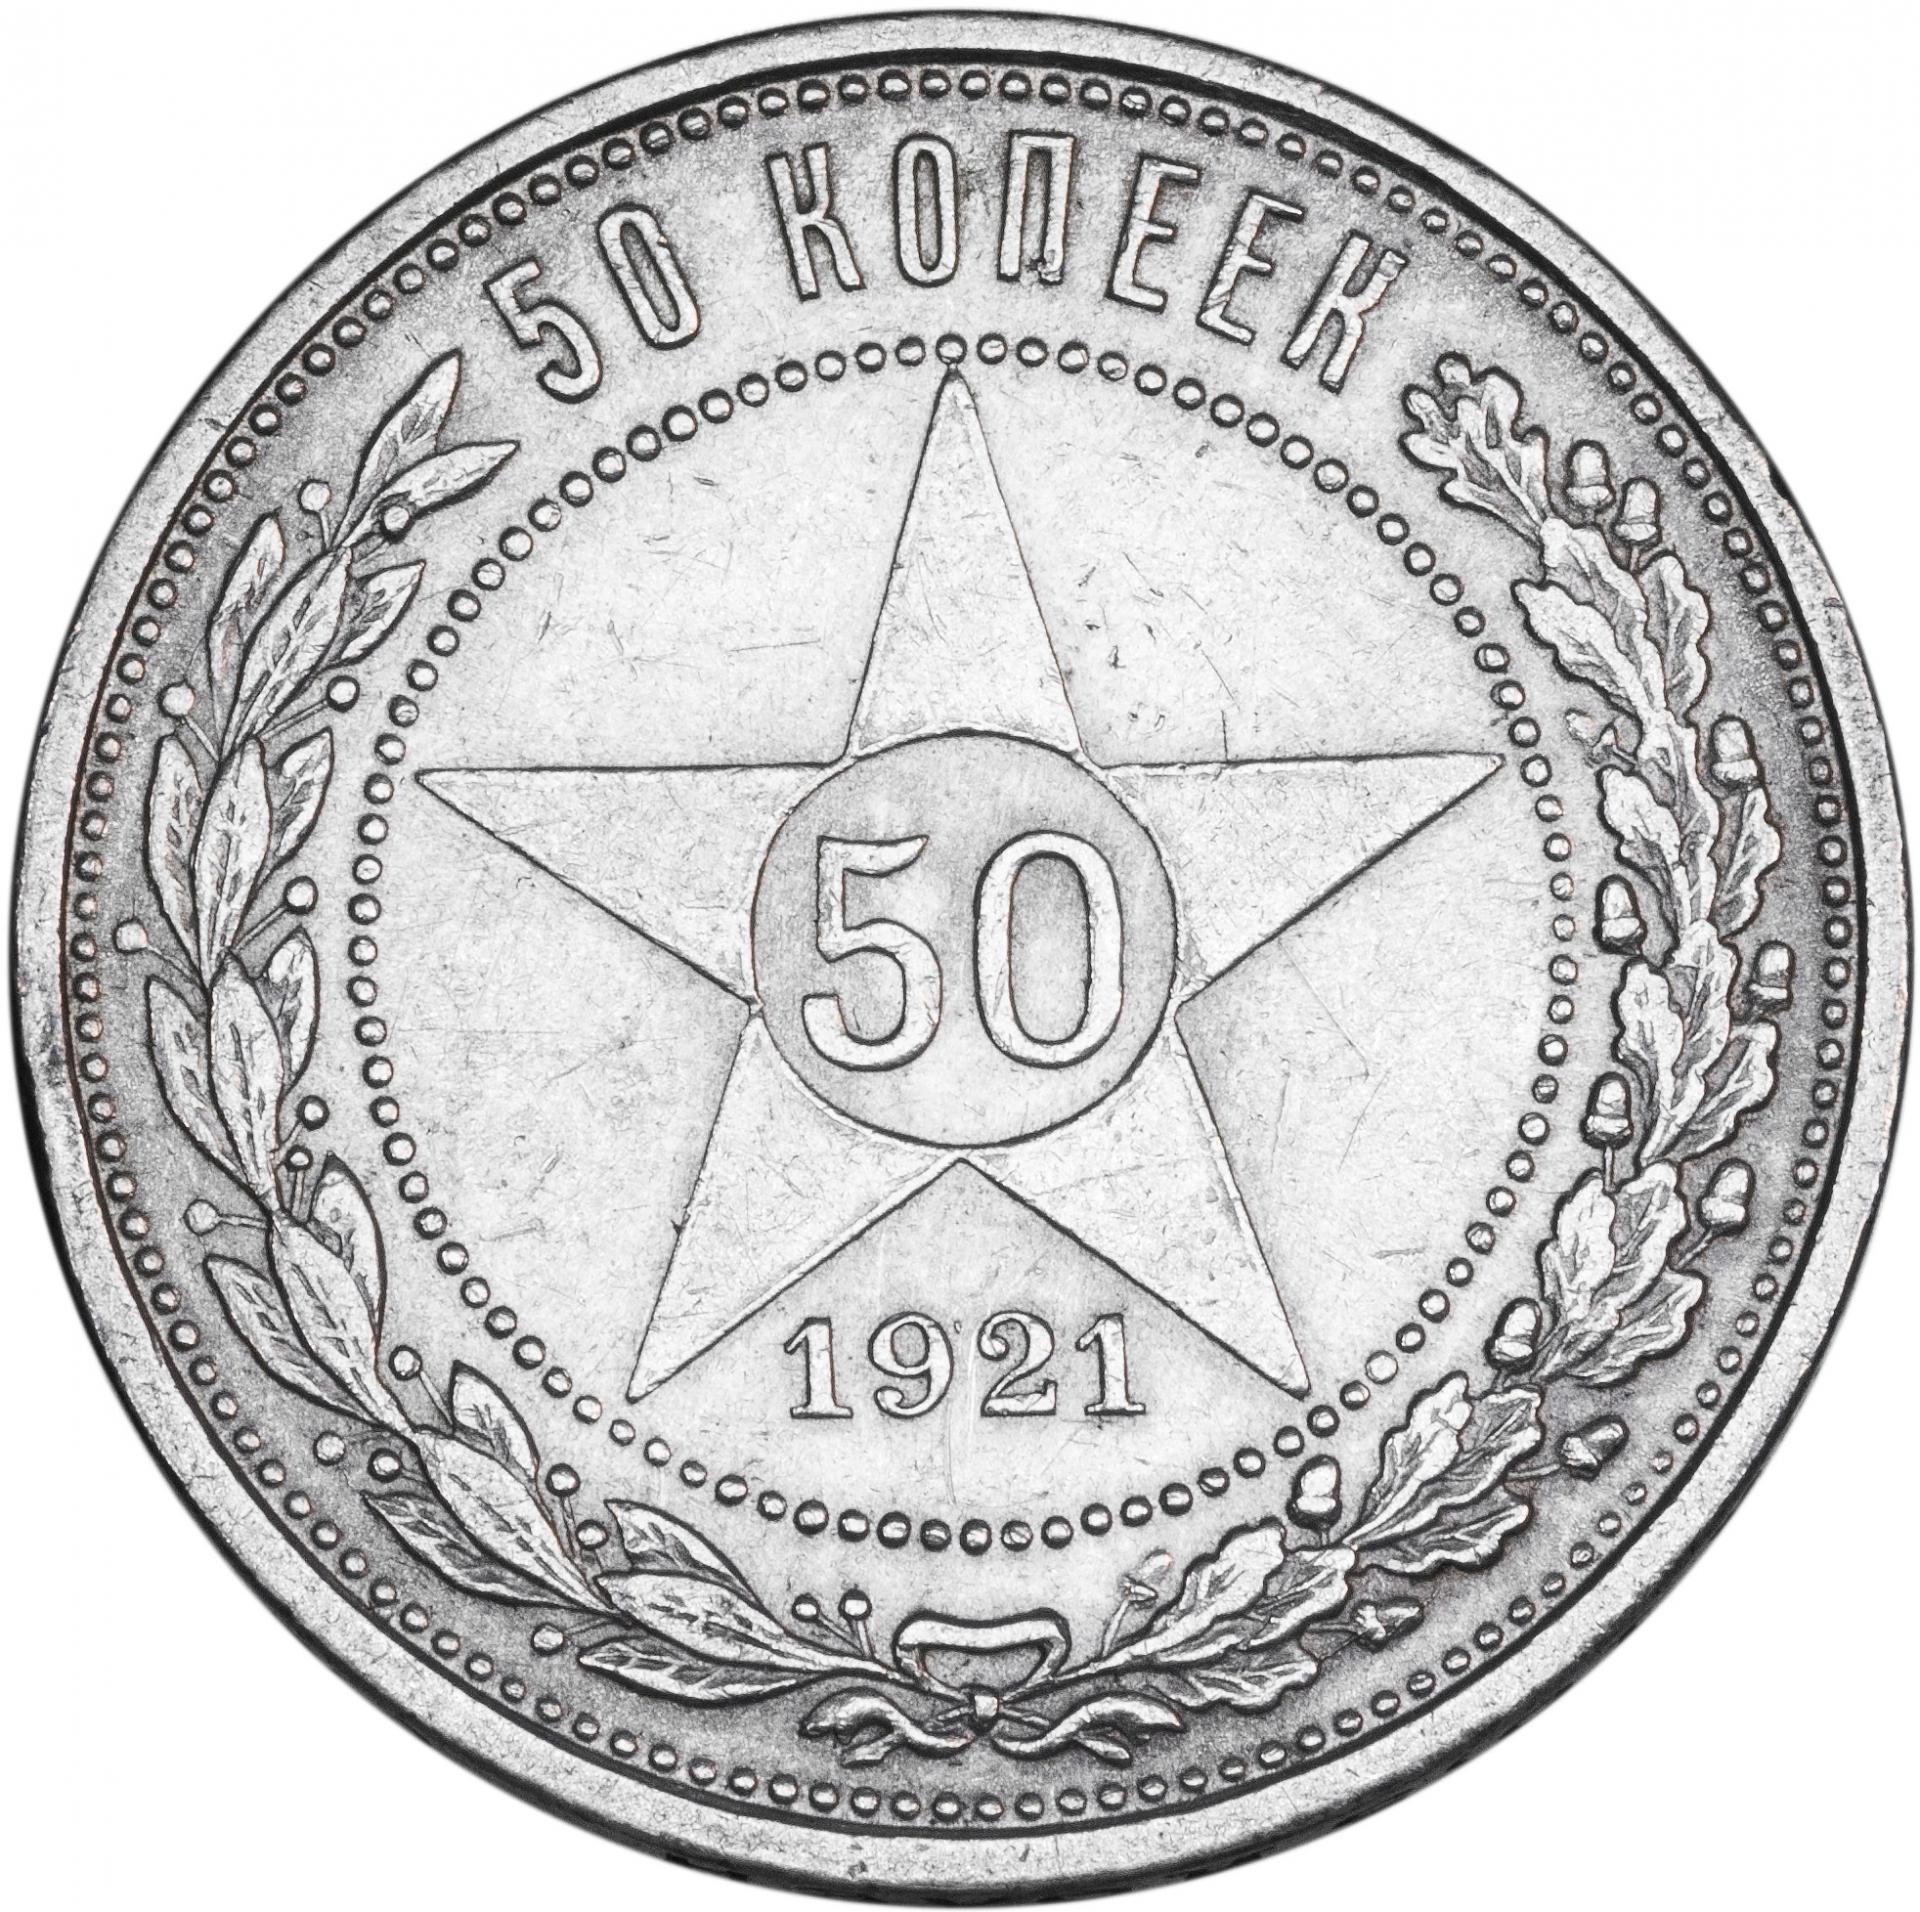 50 копеек 1922 года серебро фото